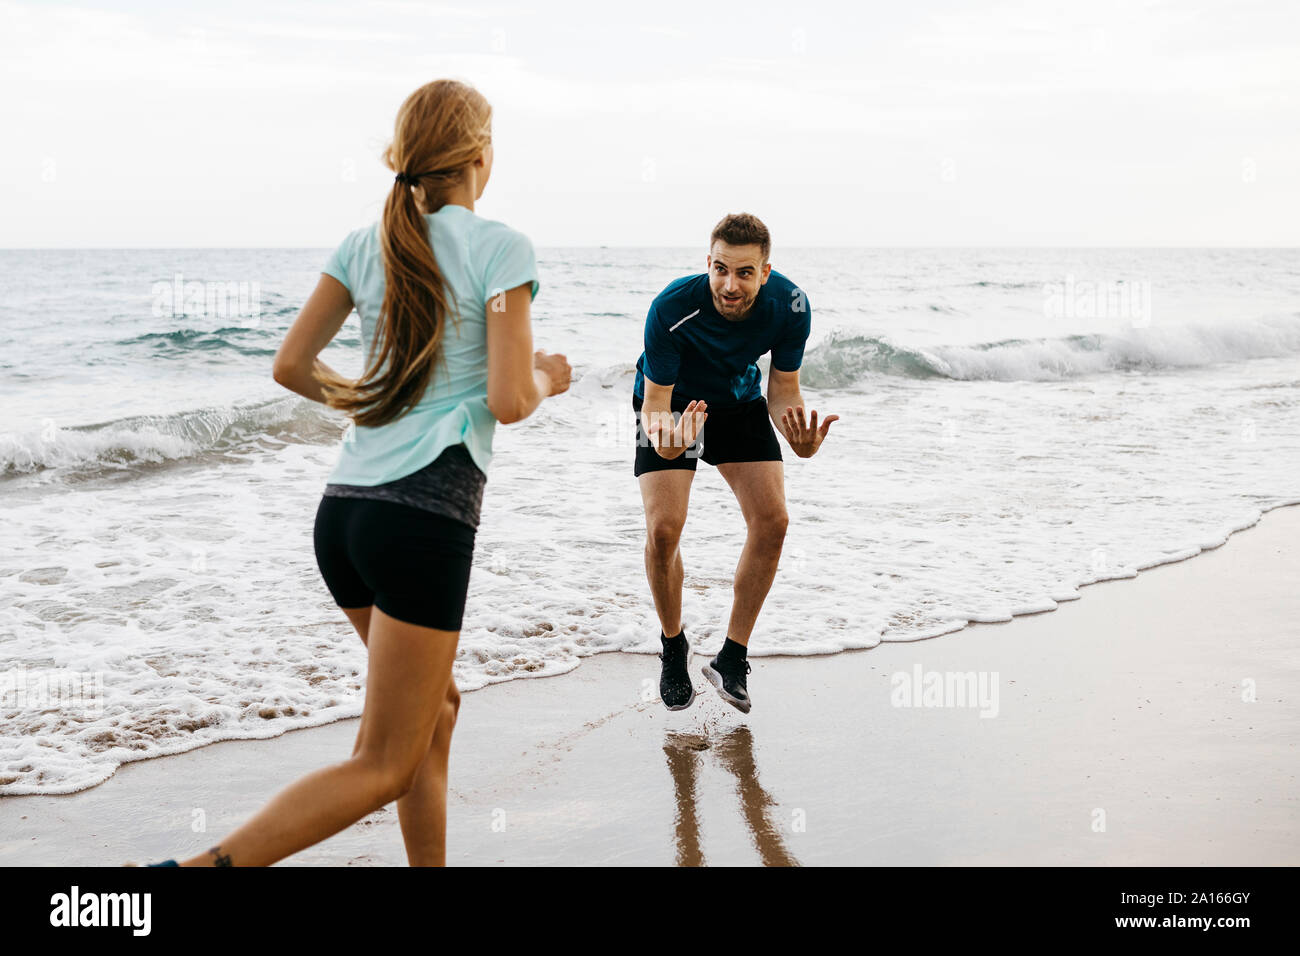 Pareggiatore femmina sulla spiaggia con il suo allenatore Foto Stock